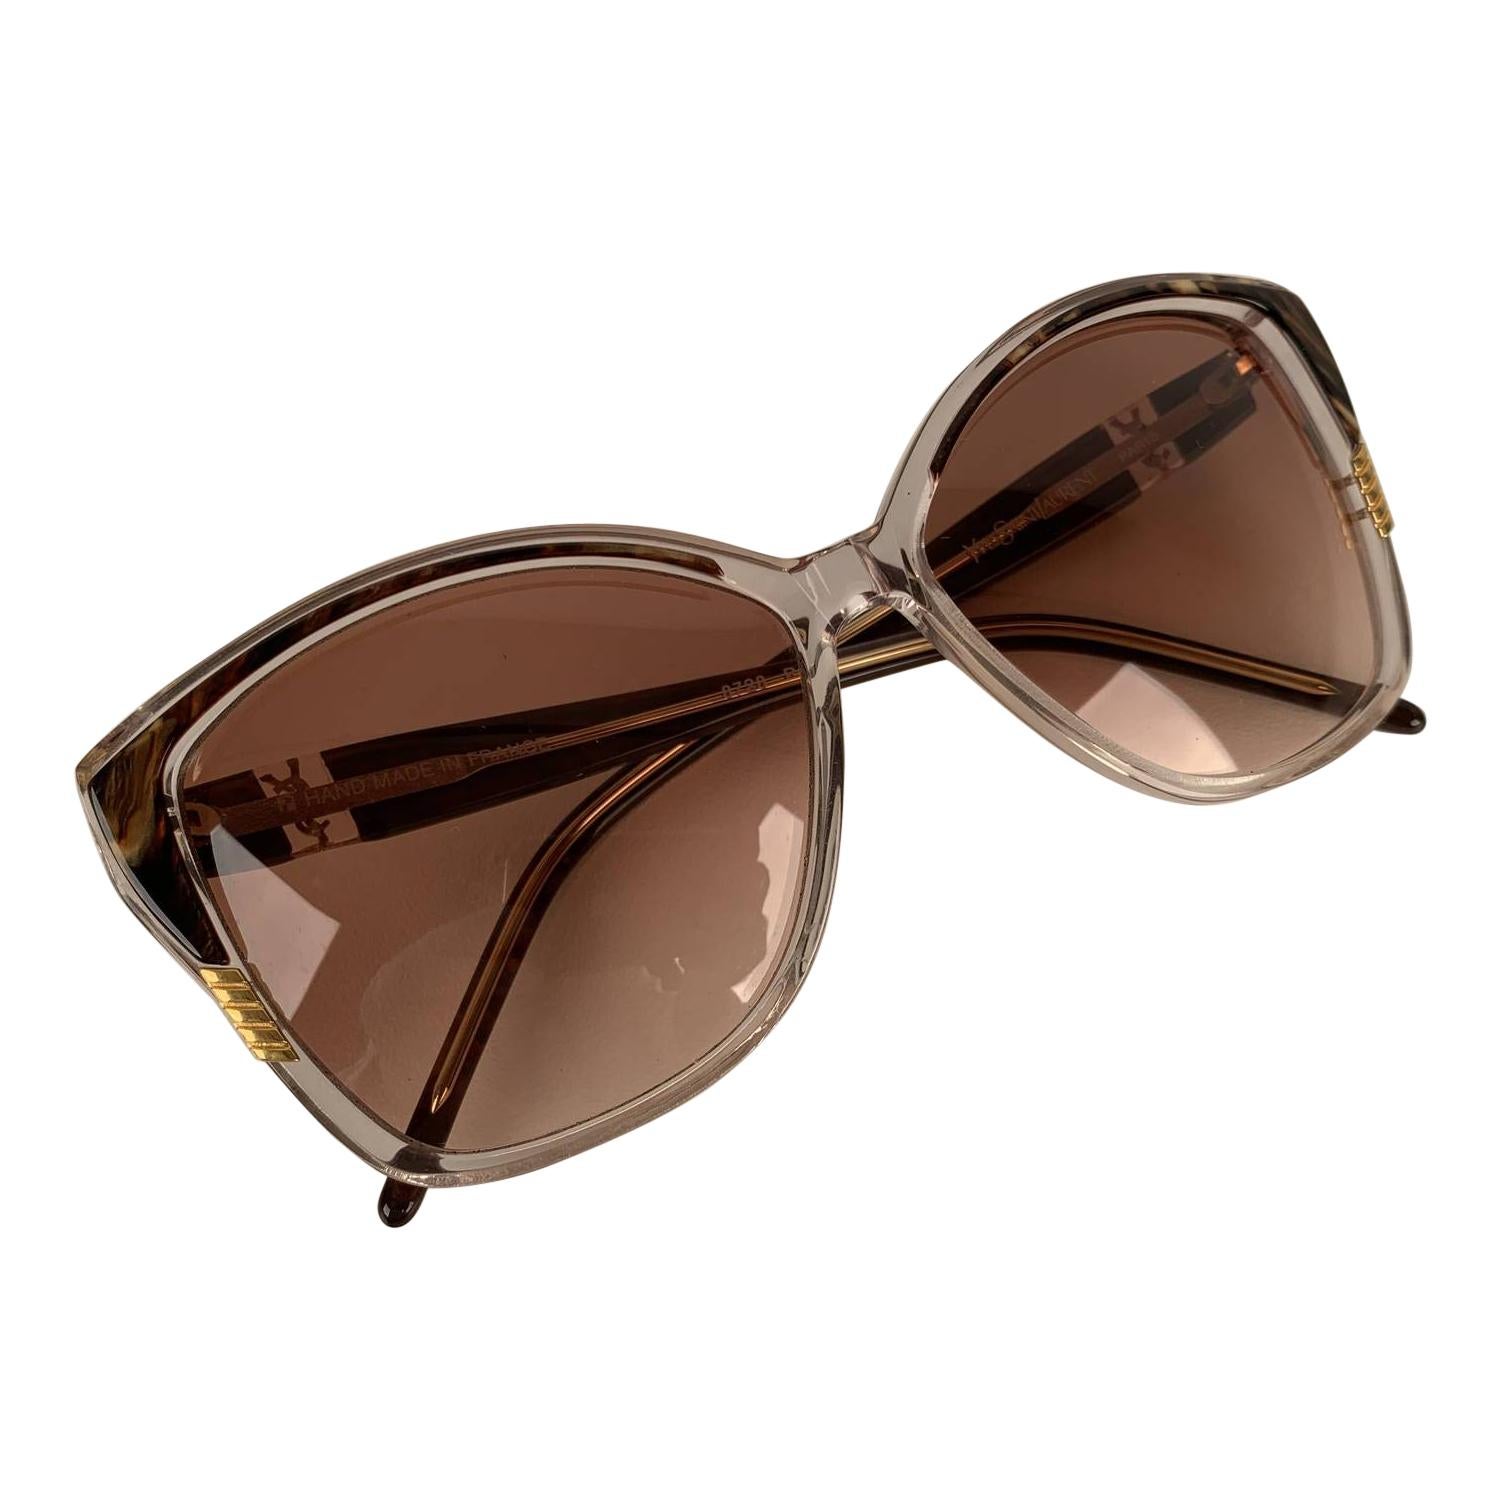 Yves Saint Laurent Vintage Clear Brown Sunglasses 8728 P 123